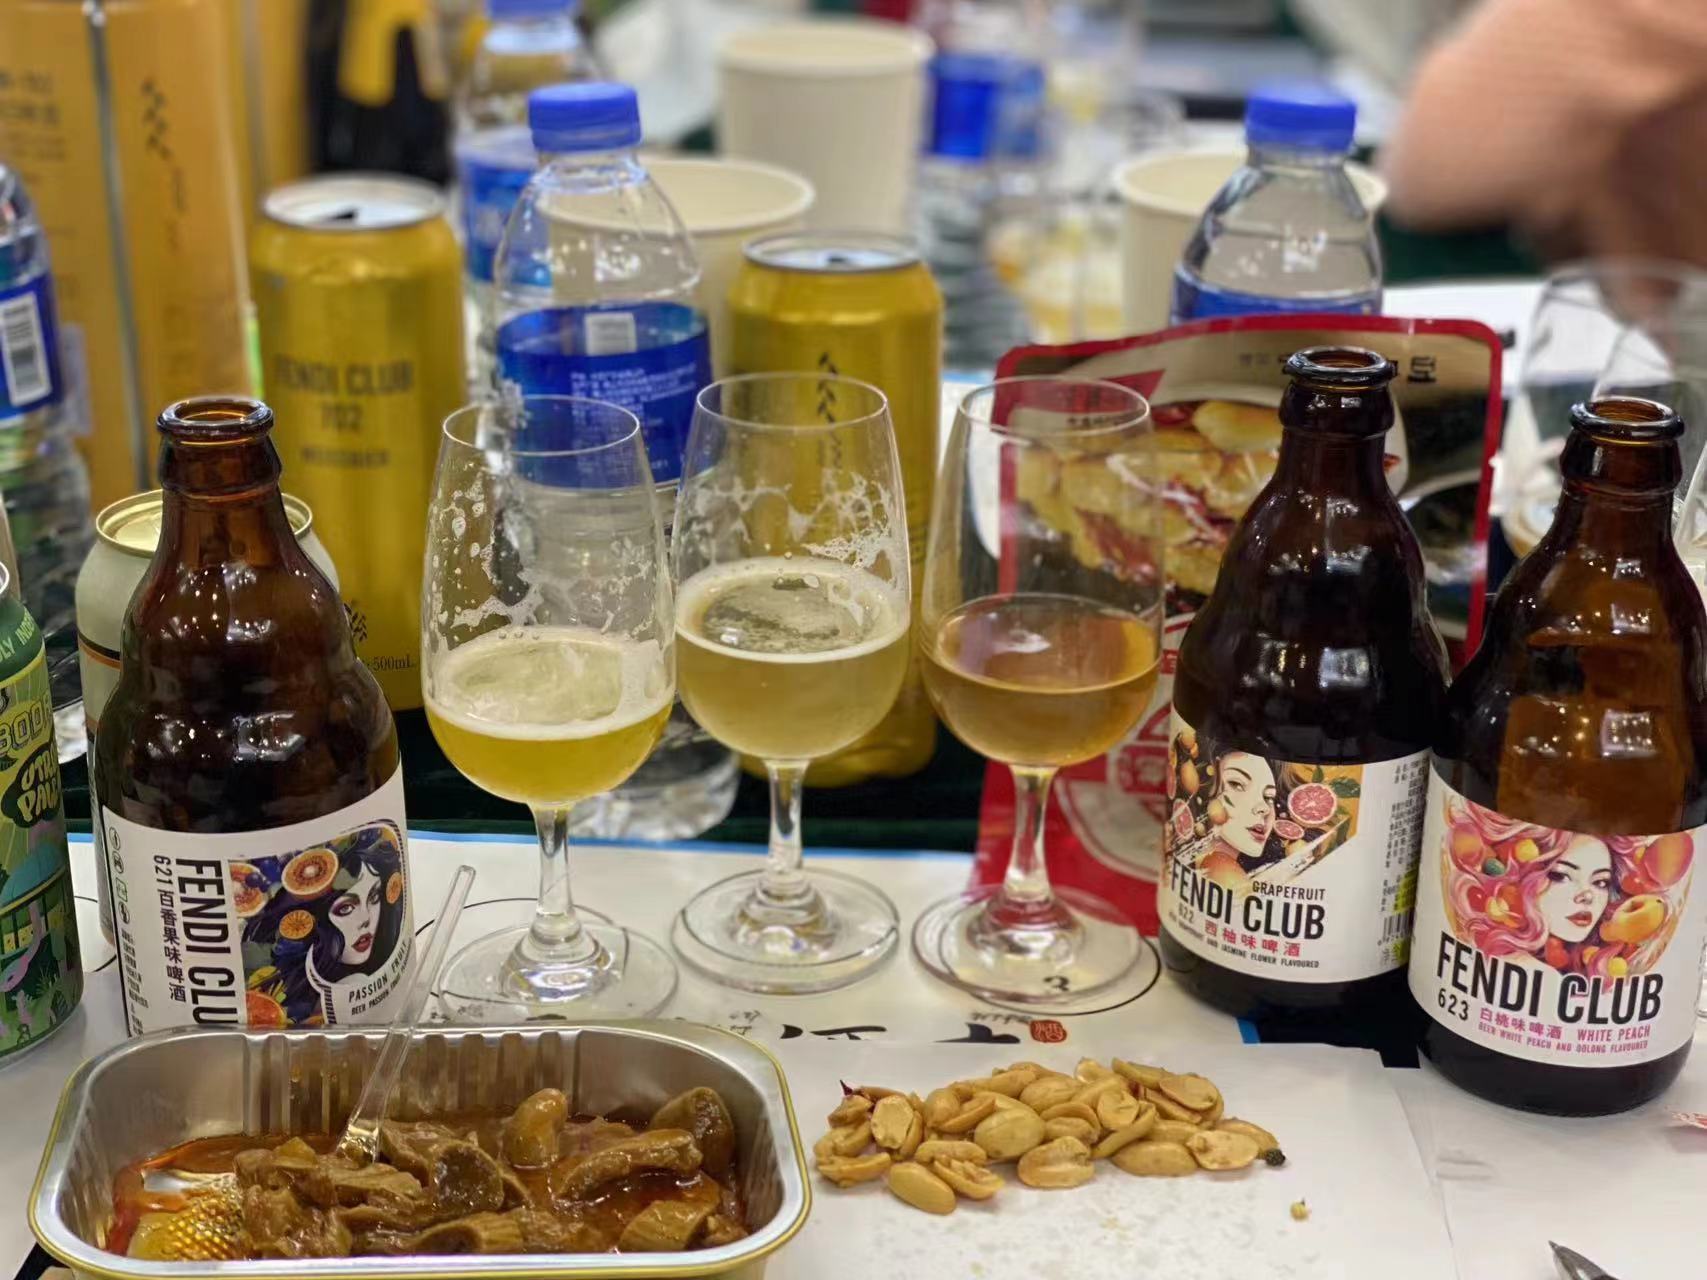 FENDI CLUB分享精酿啤酒的分类，认识啤酒的种类和特色